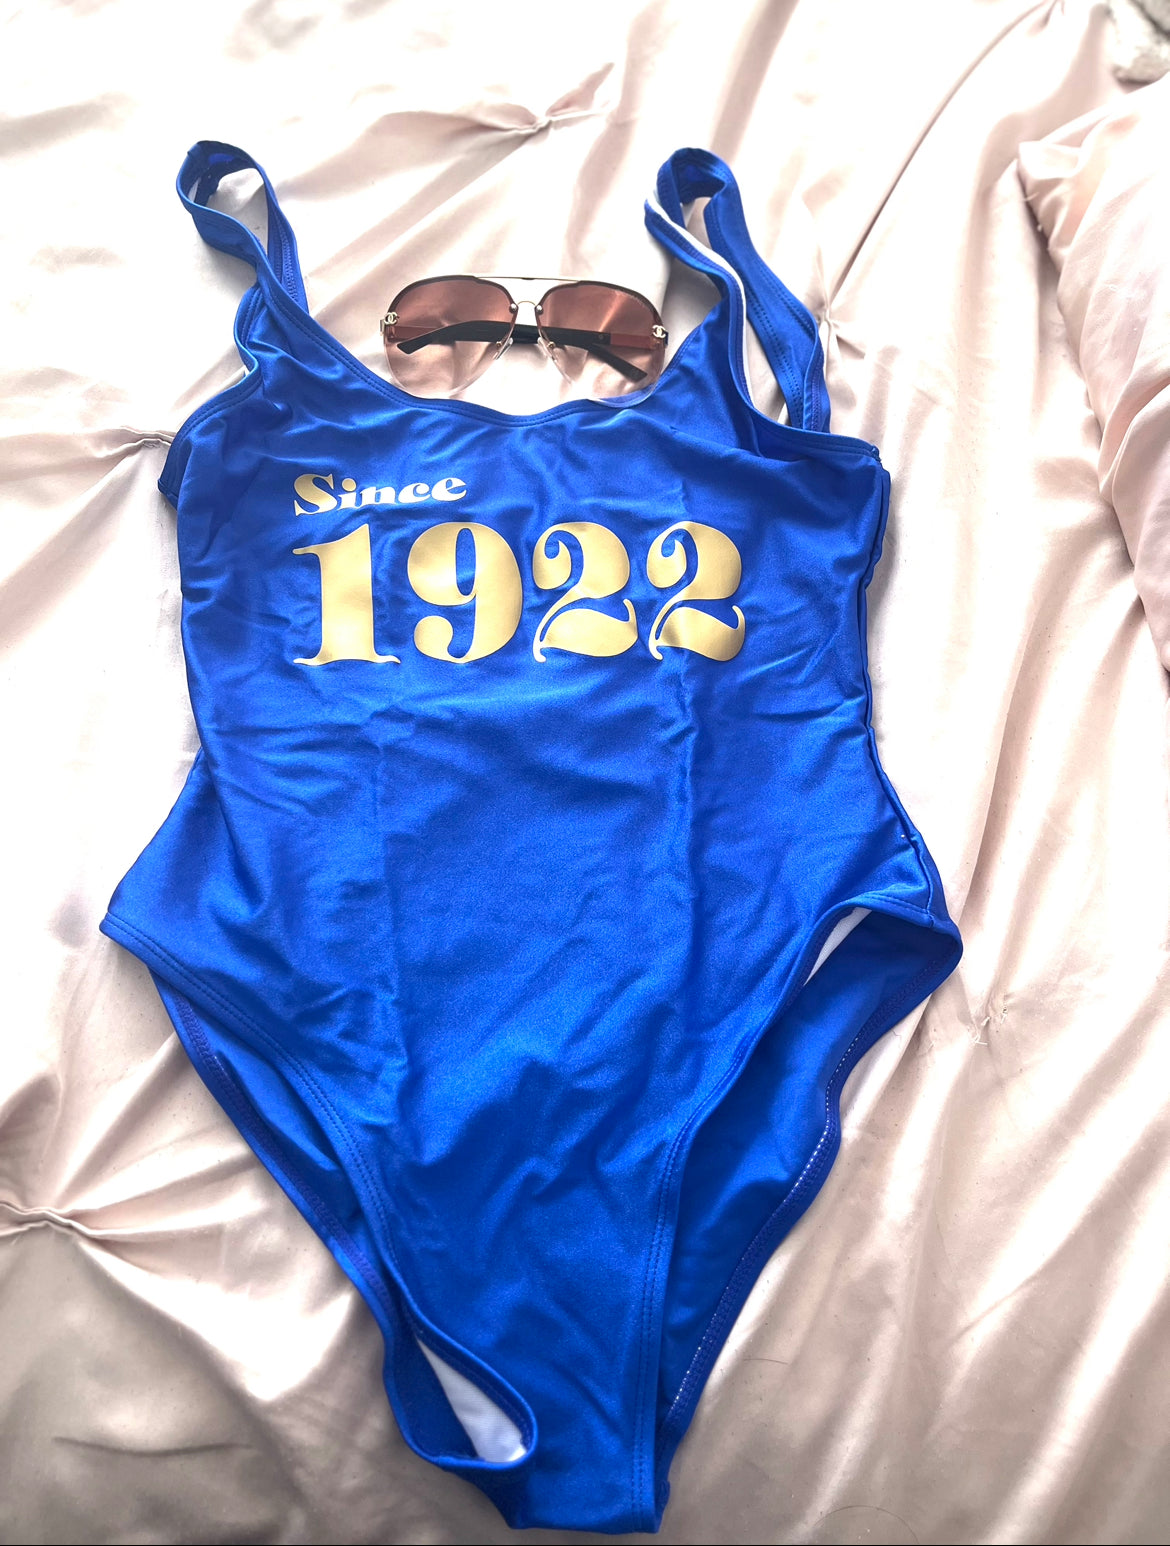 Since 1922 - Swimsuit SALE!